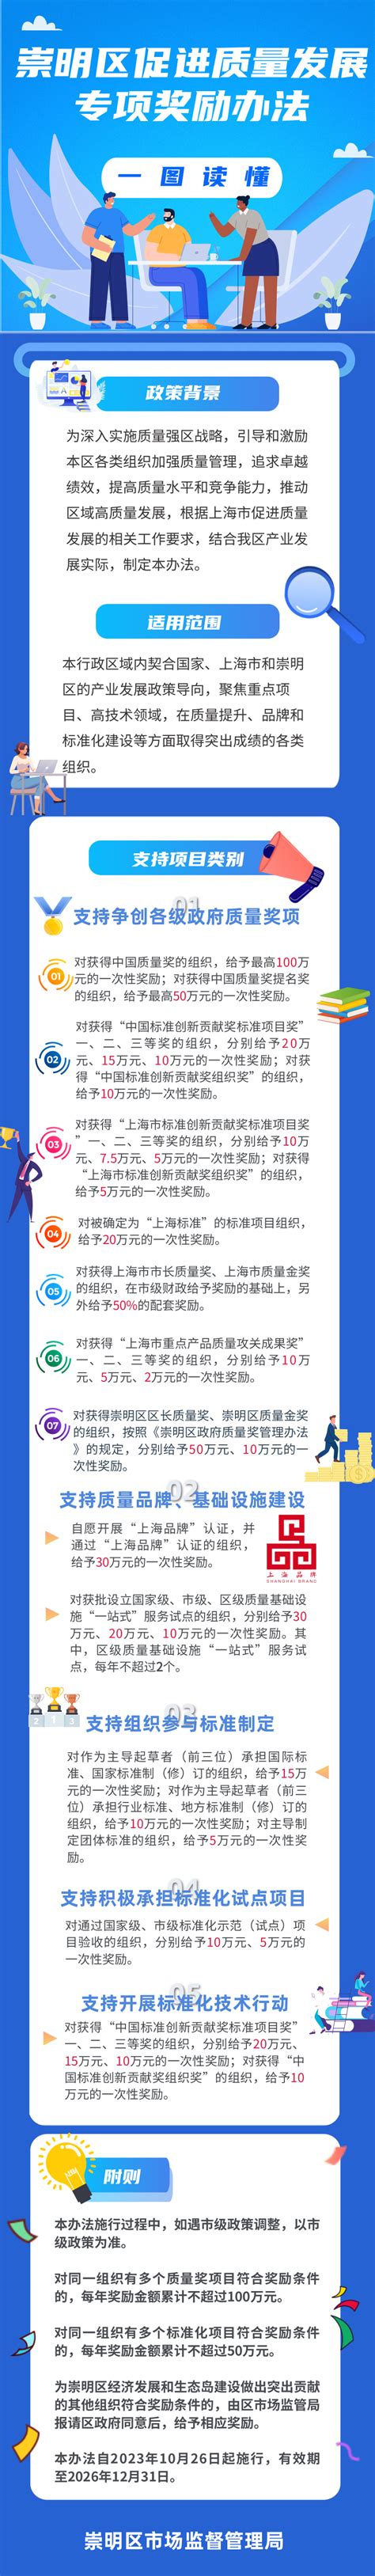 上海市崇明区市场监管局积极开展禁传宣传活动-直销人网